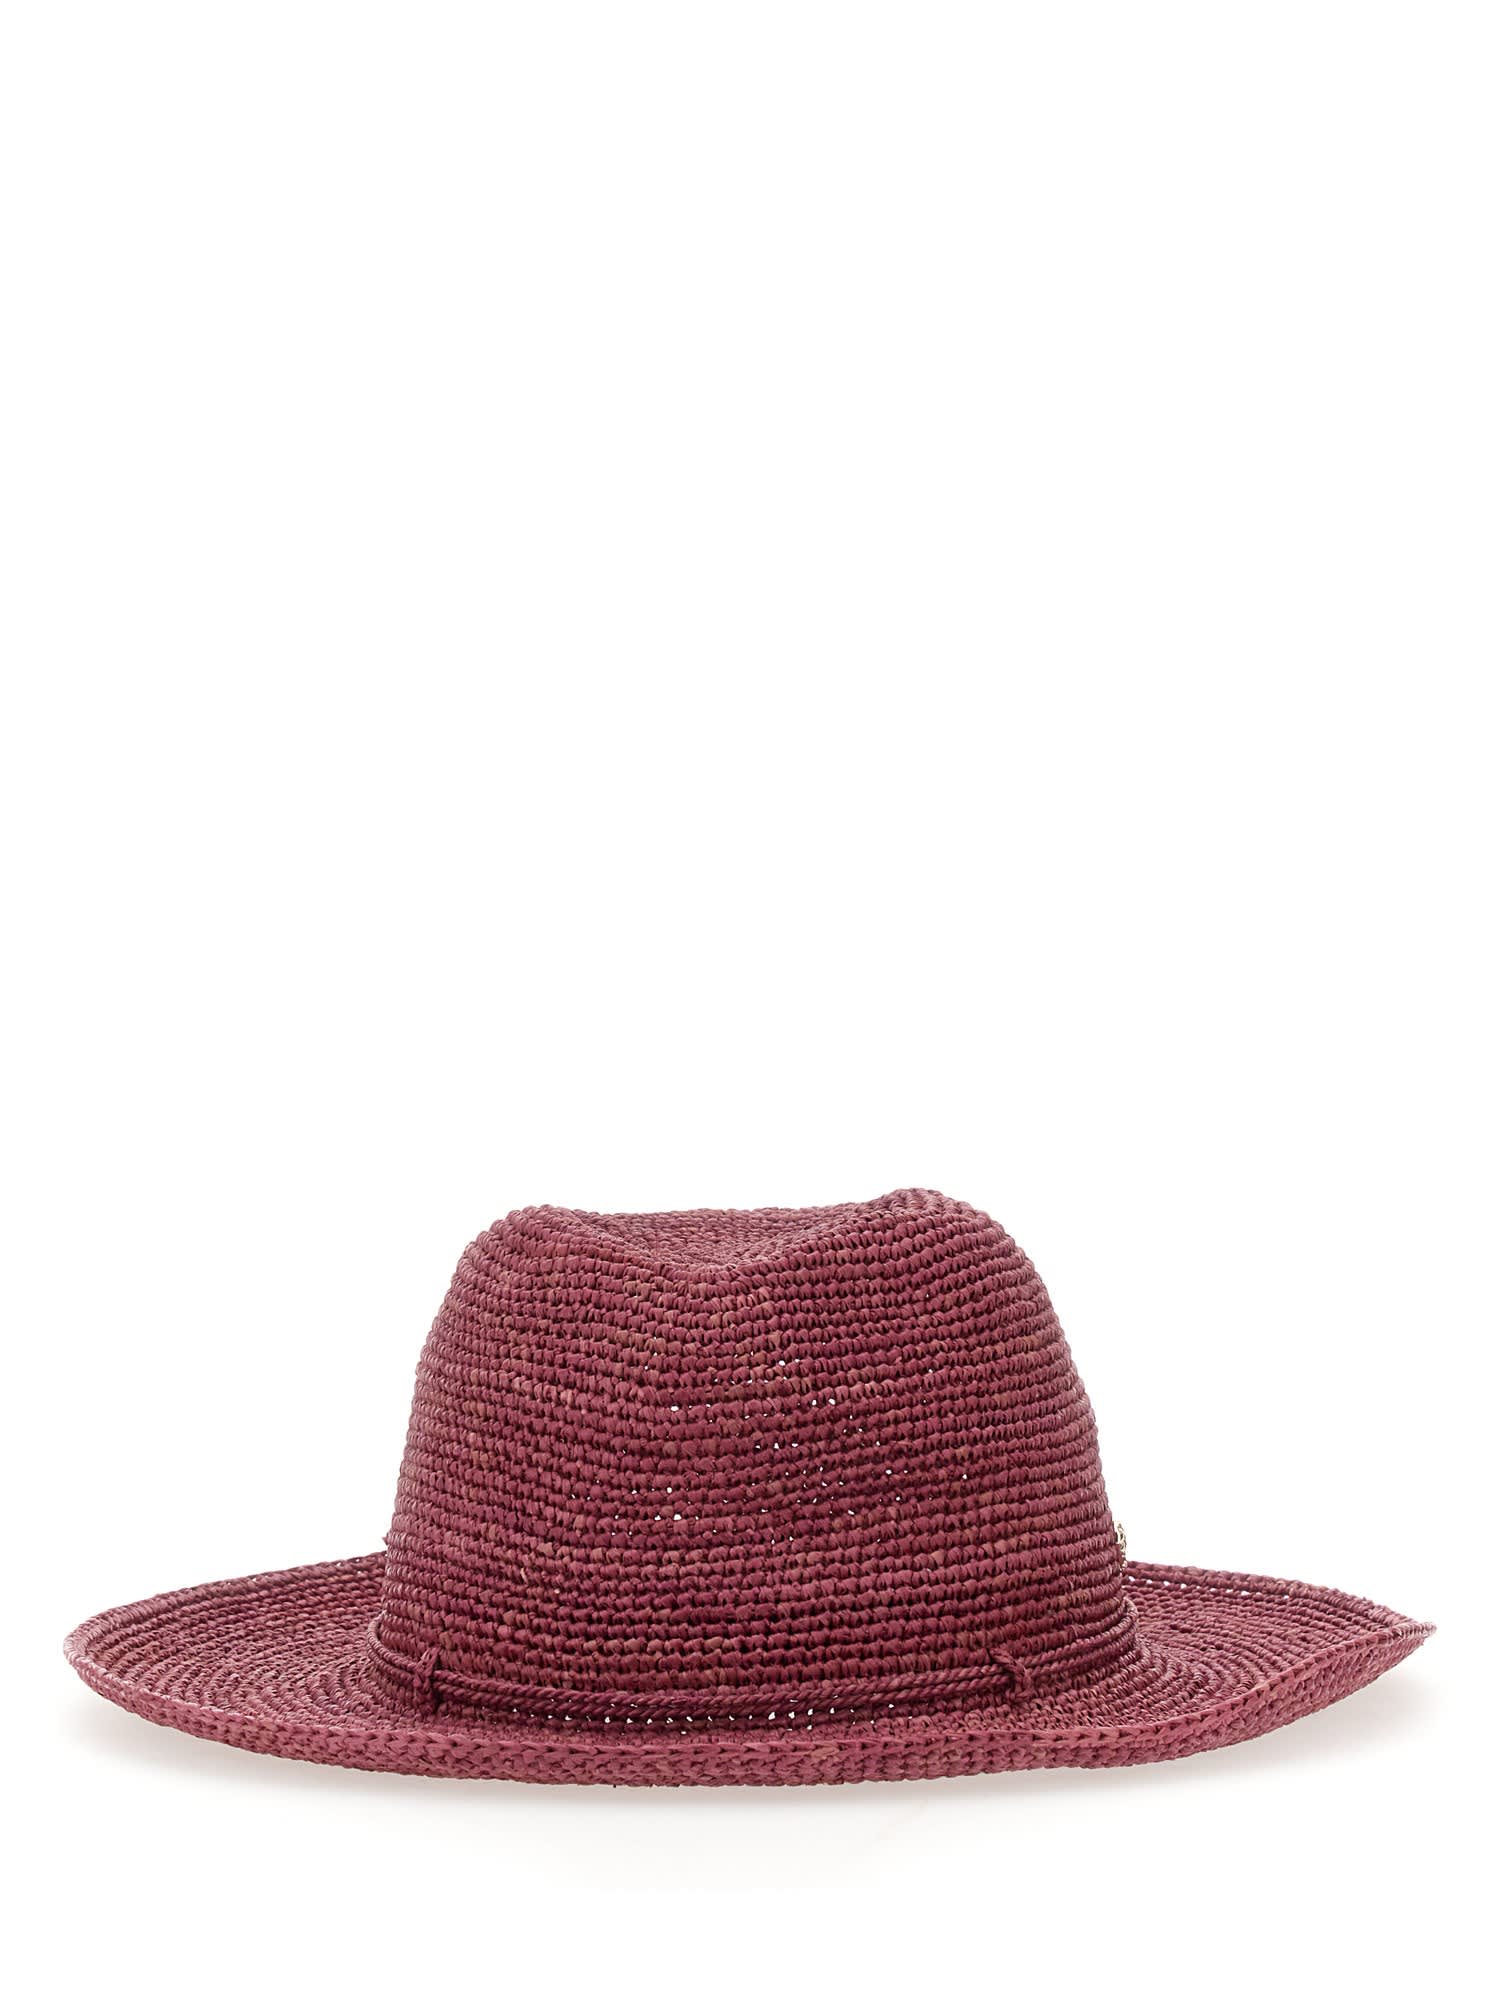 Helen Kaminski Desmonda Hat